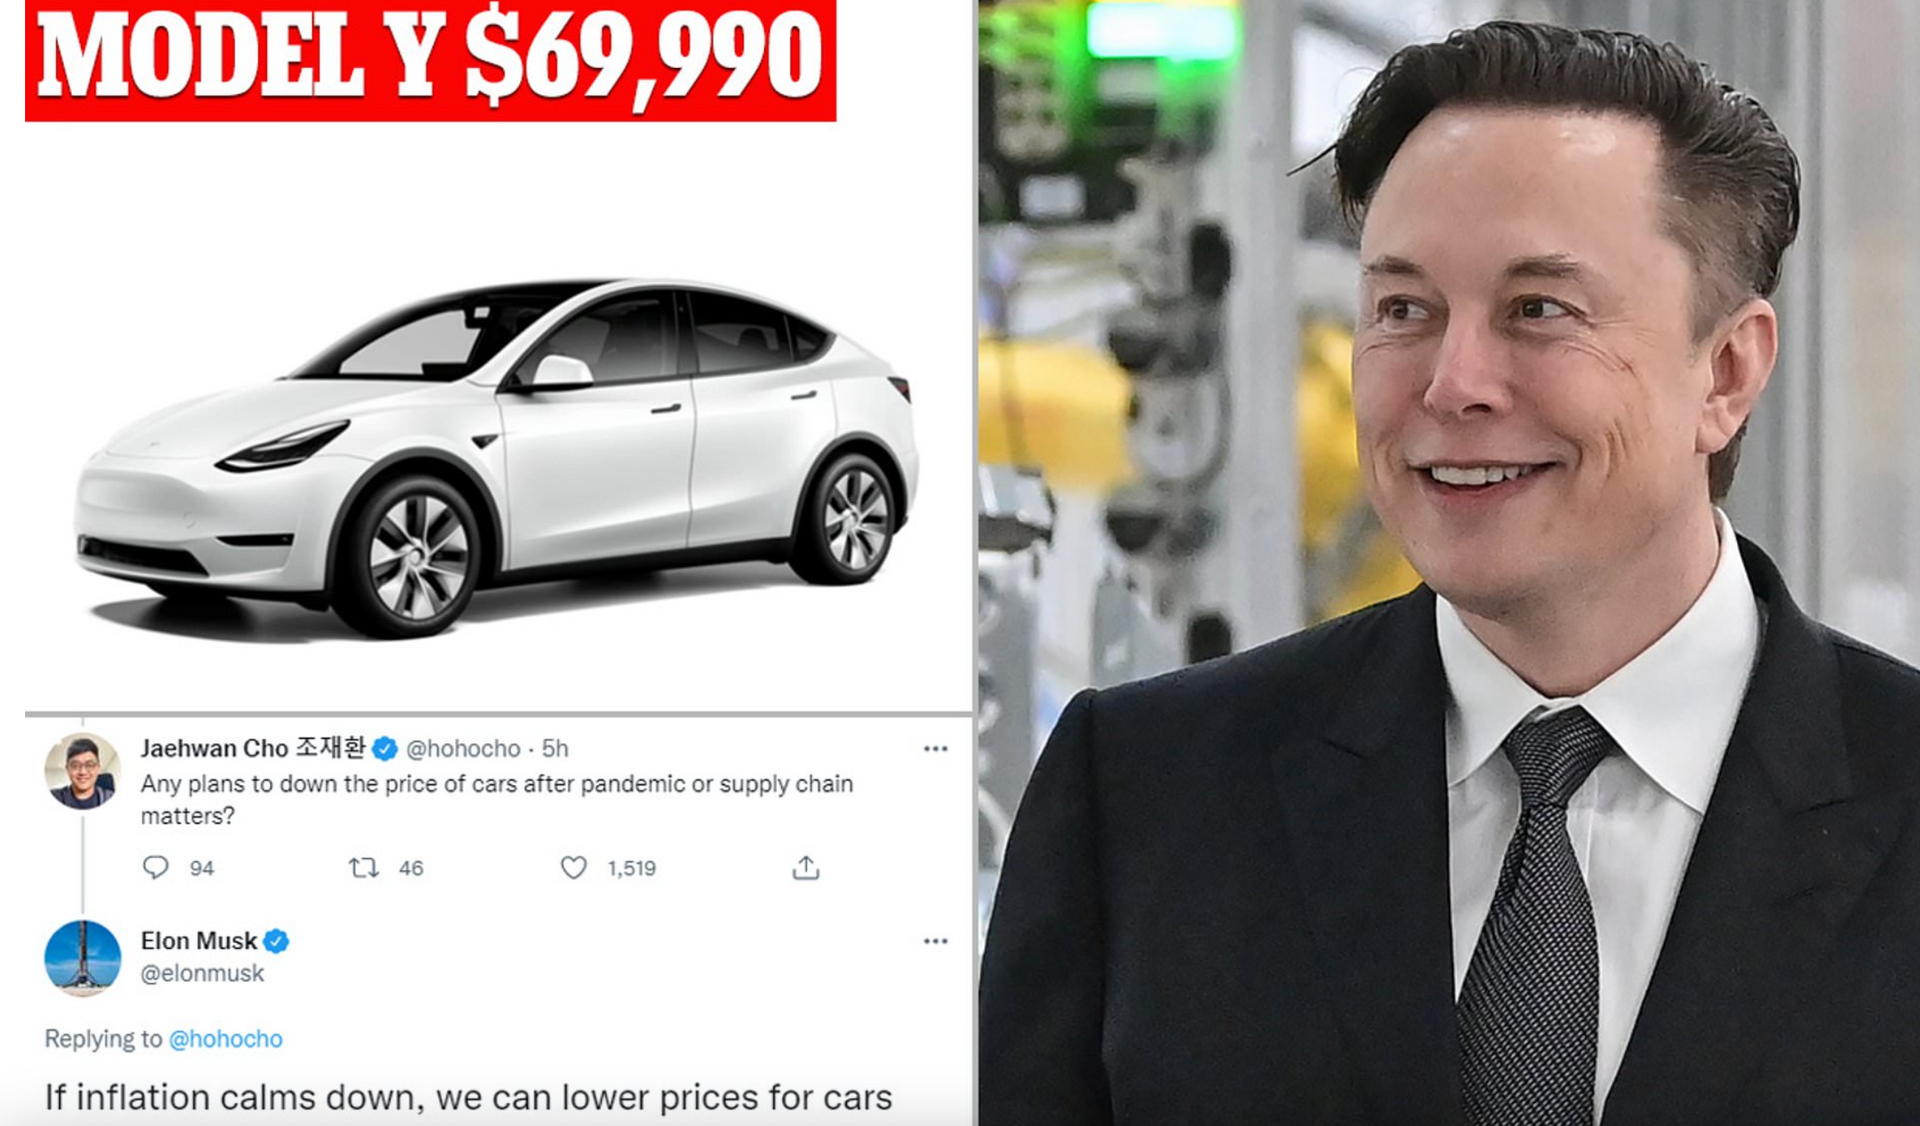 Chủ xe Tesla bị 'hớ' khi hãng hạ giá mạnh: Vừa mua đã thấy giá thấp hơn 300 triệu, bán xe cũ rẻ hơn gần 500 triệu vẫn không ai 'ngó ngàng' - Ảnh 1.